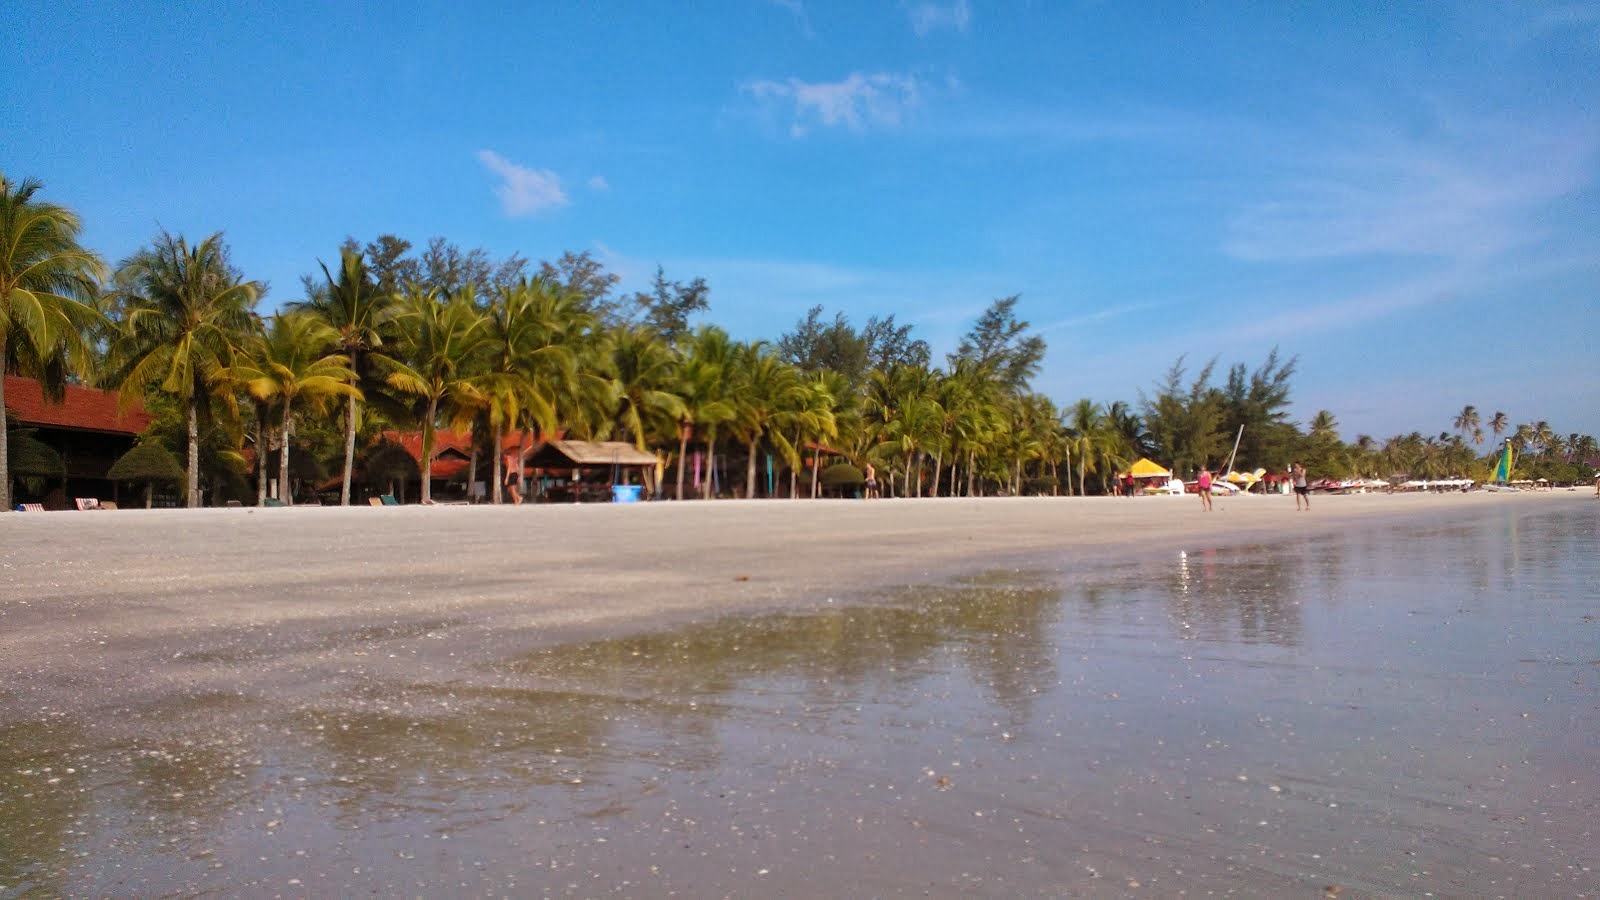 Pantai Cenang Beach - Langkawi - Malaysia